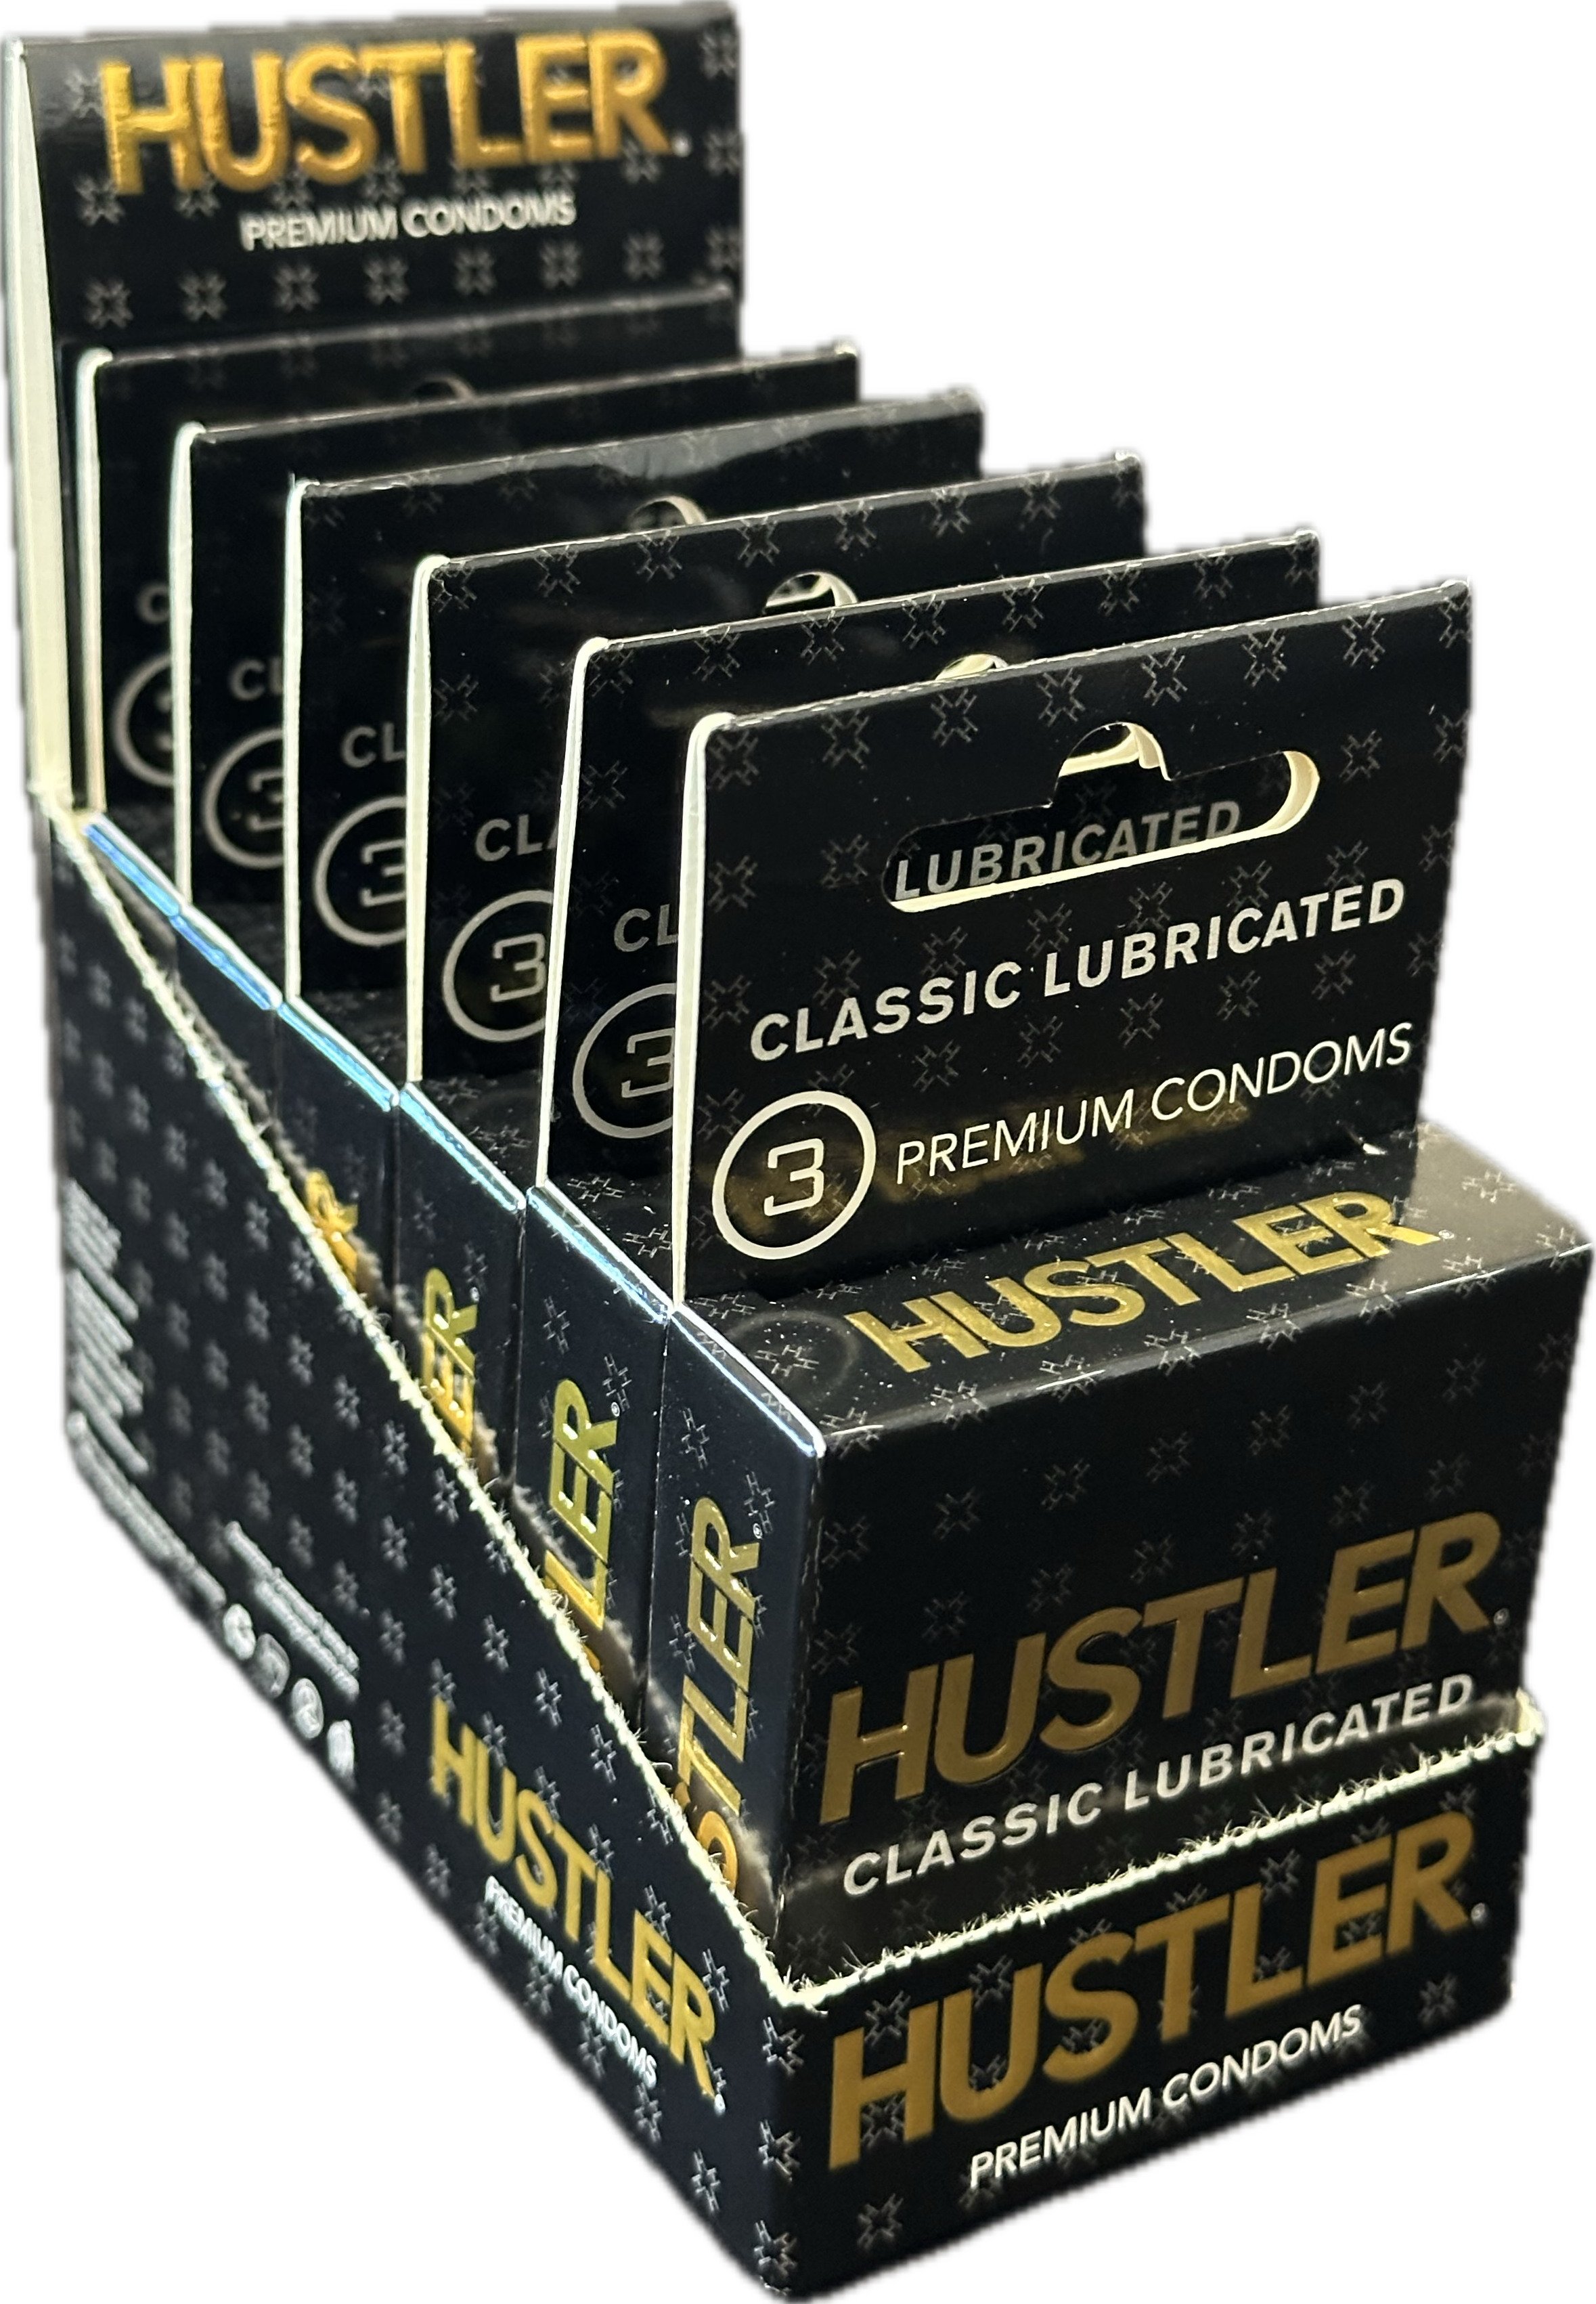 Hustler classic premium condoms 6ct